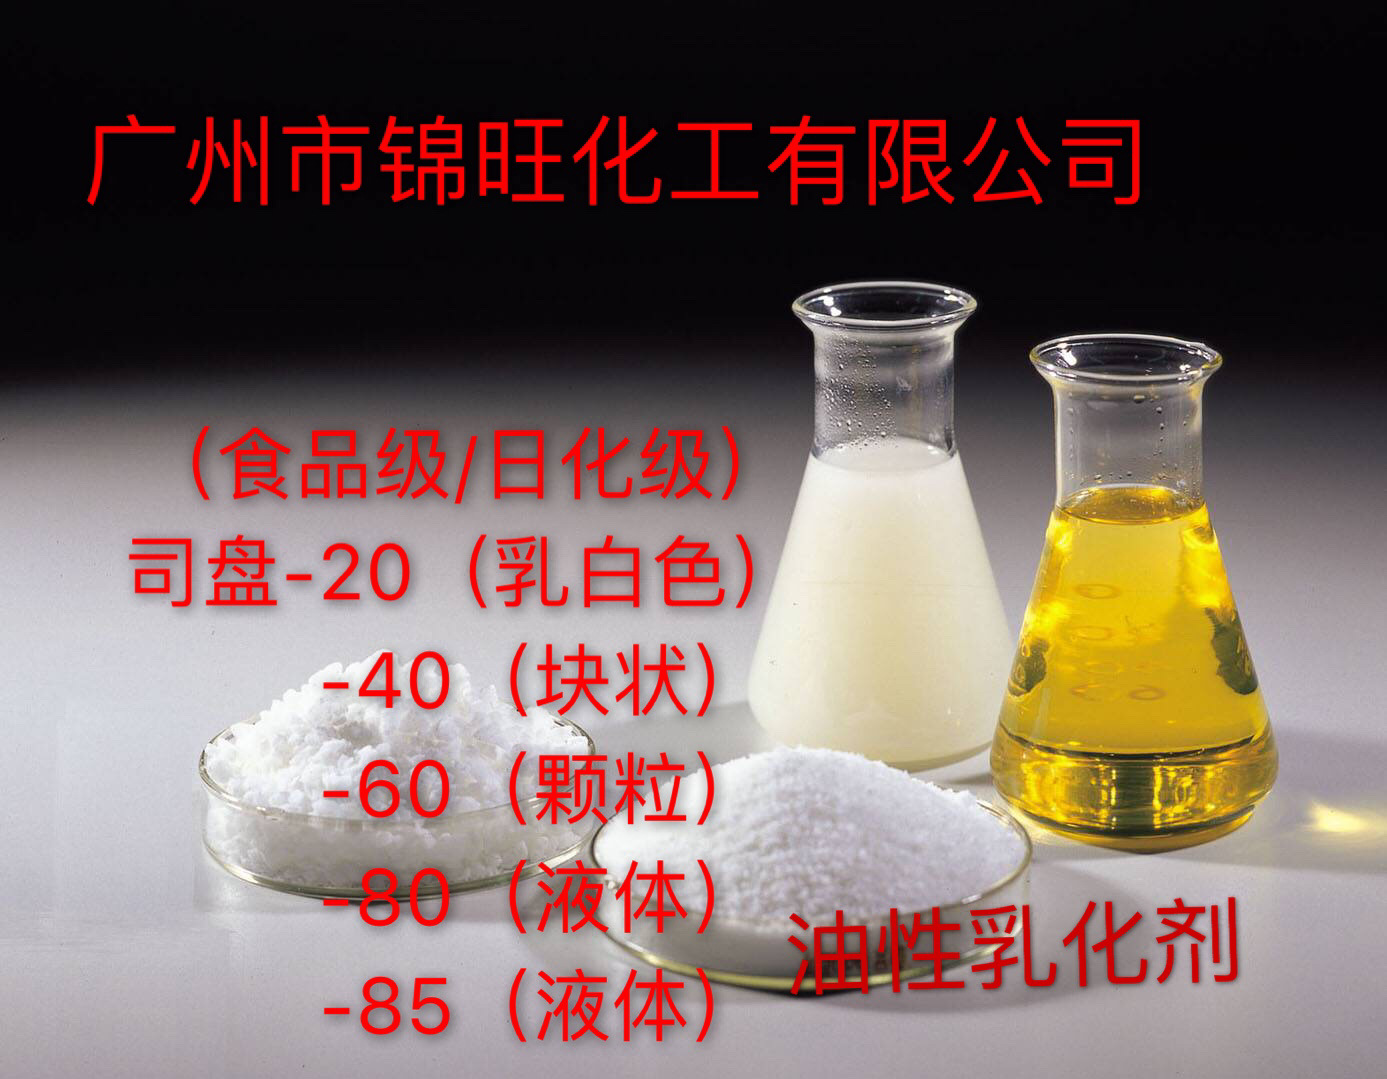 司盤S-20(食品/日化級) 油性乳化劑 (可小量定購)